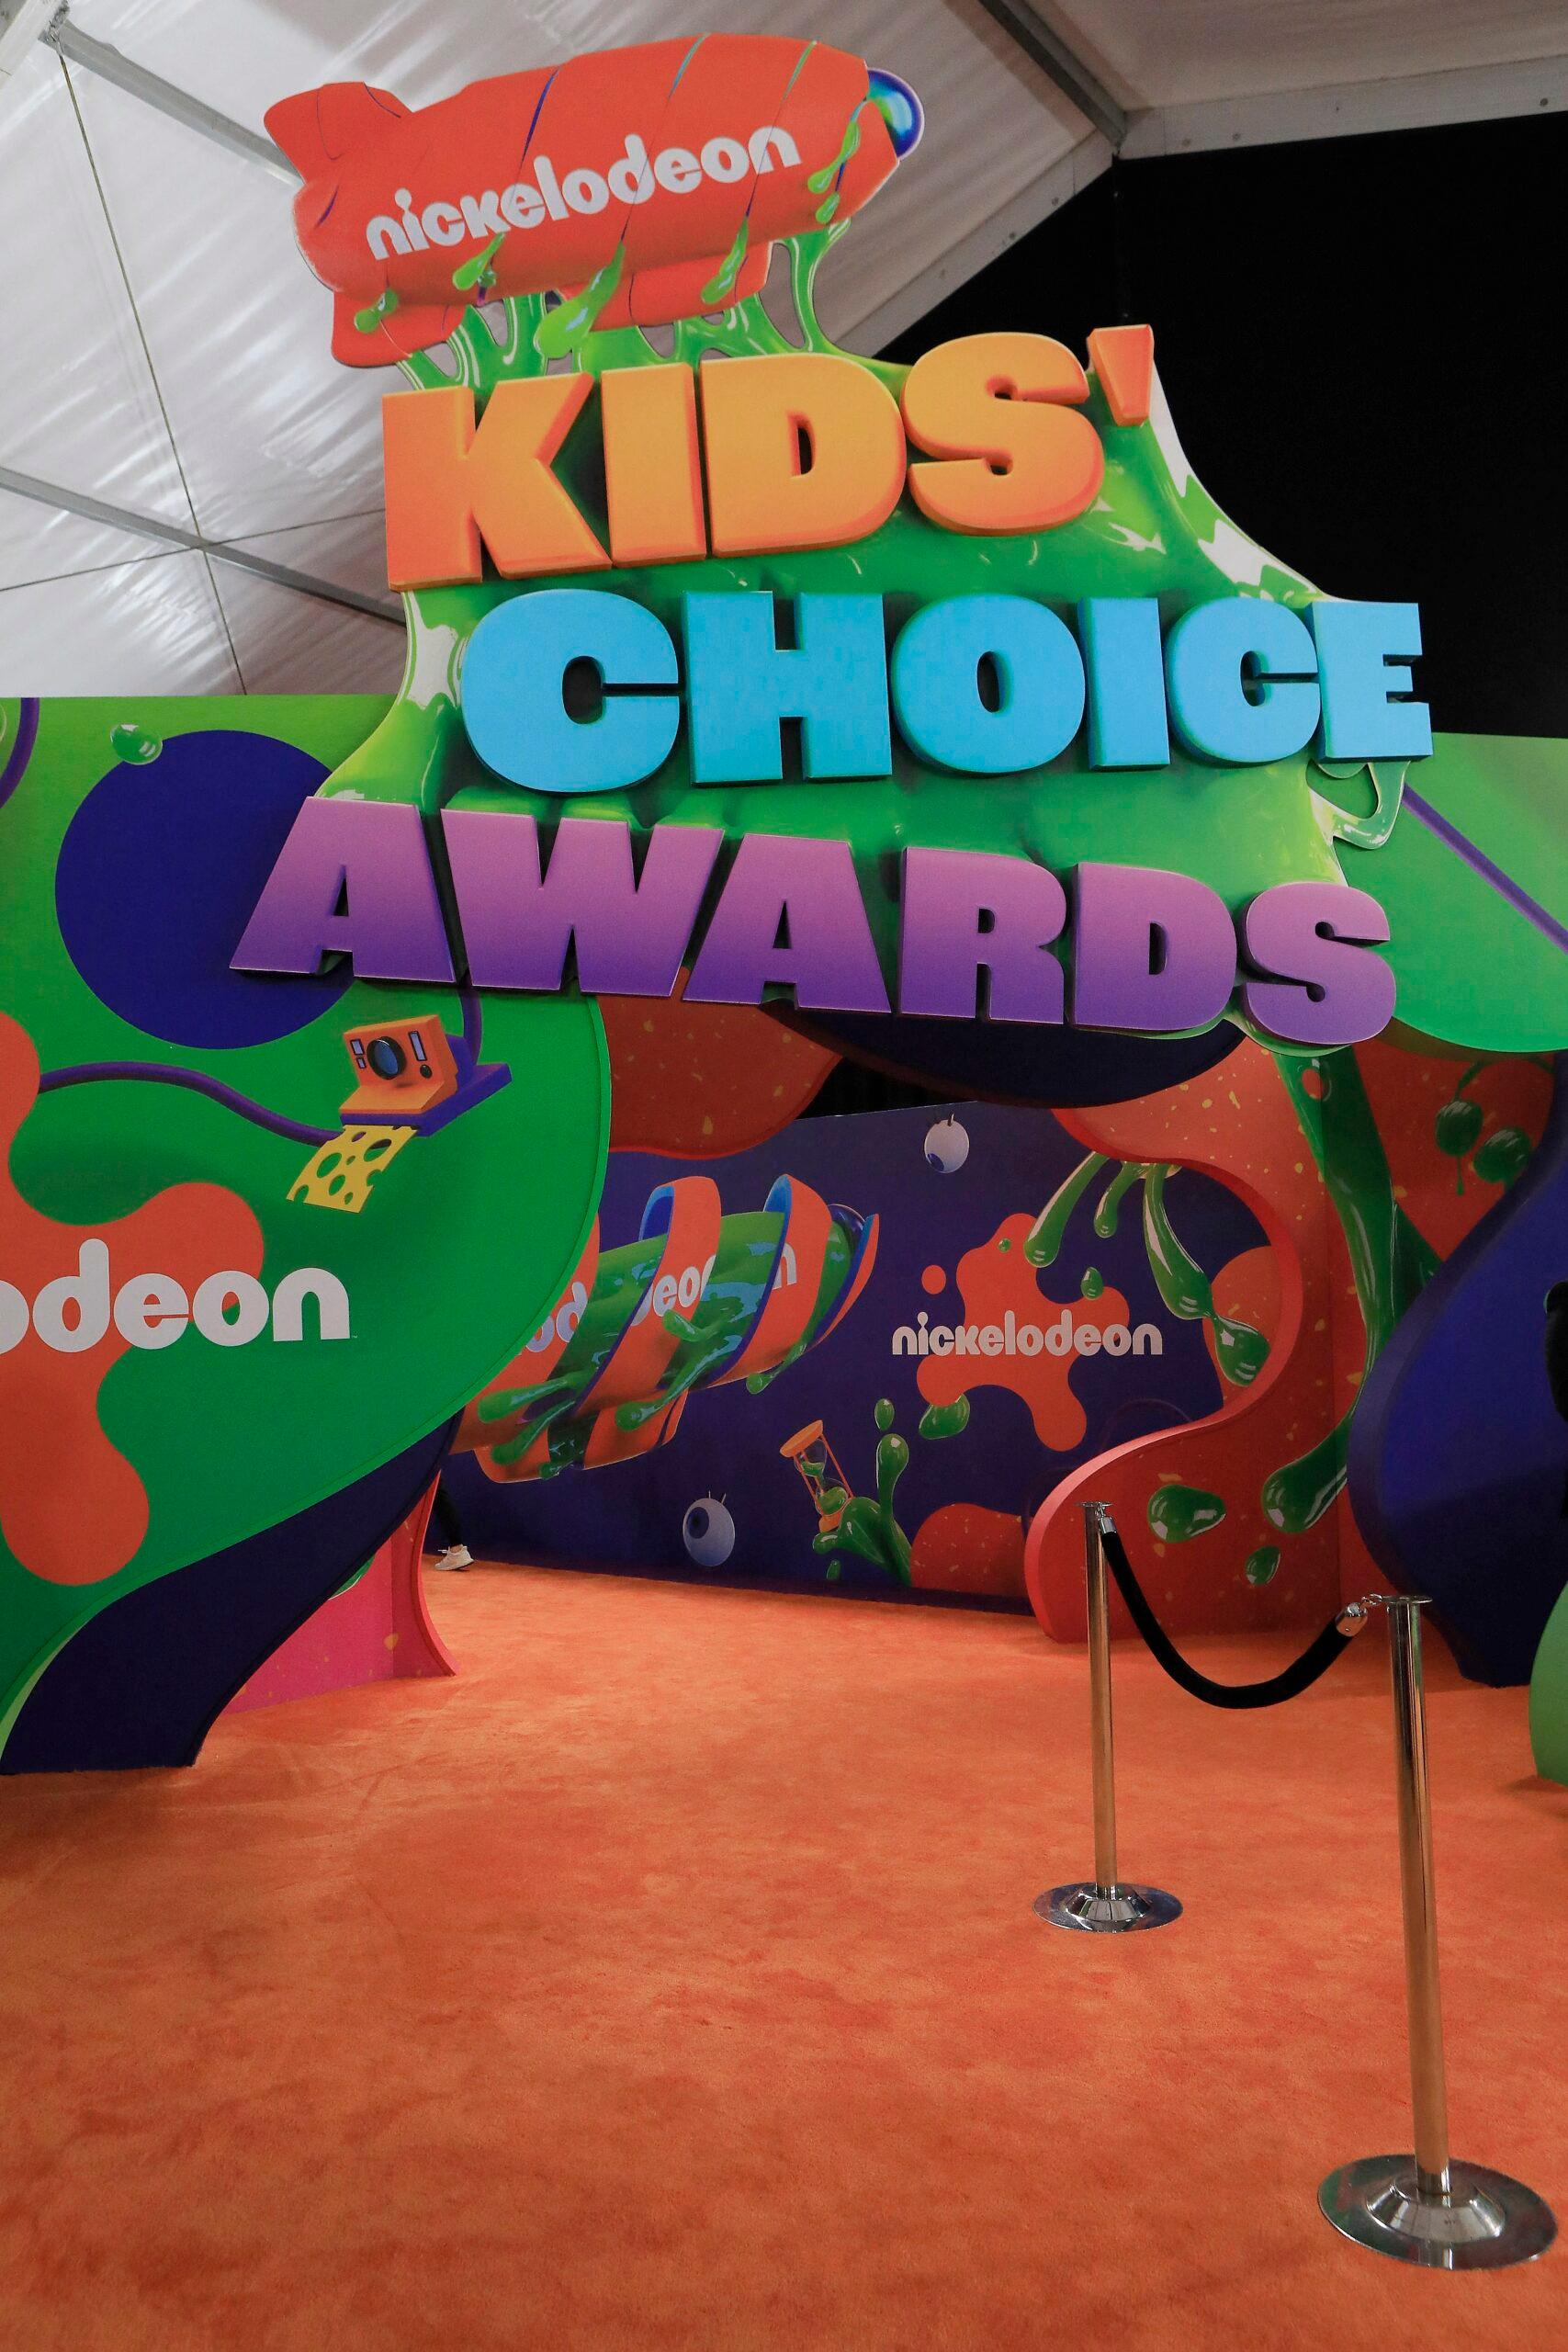 Nickelodeon supostamente enviou computadores aos atores com ‘Child P-rn On Them’